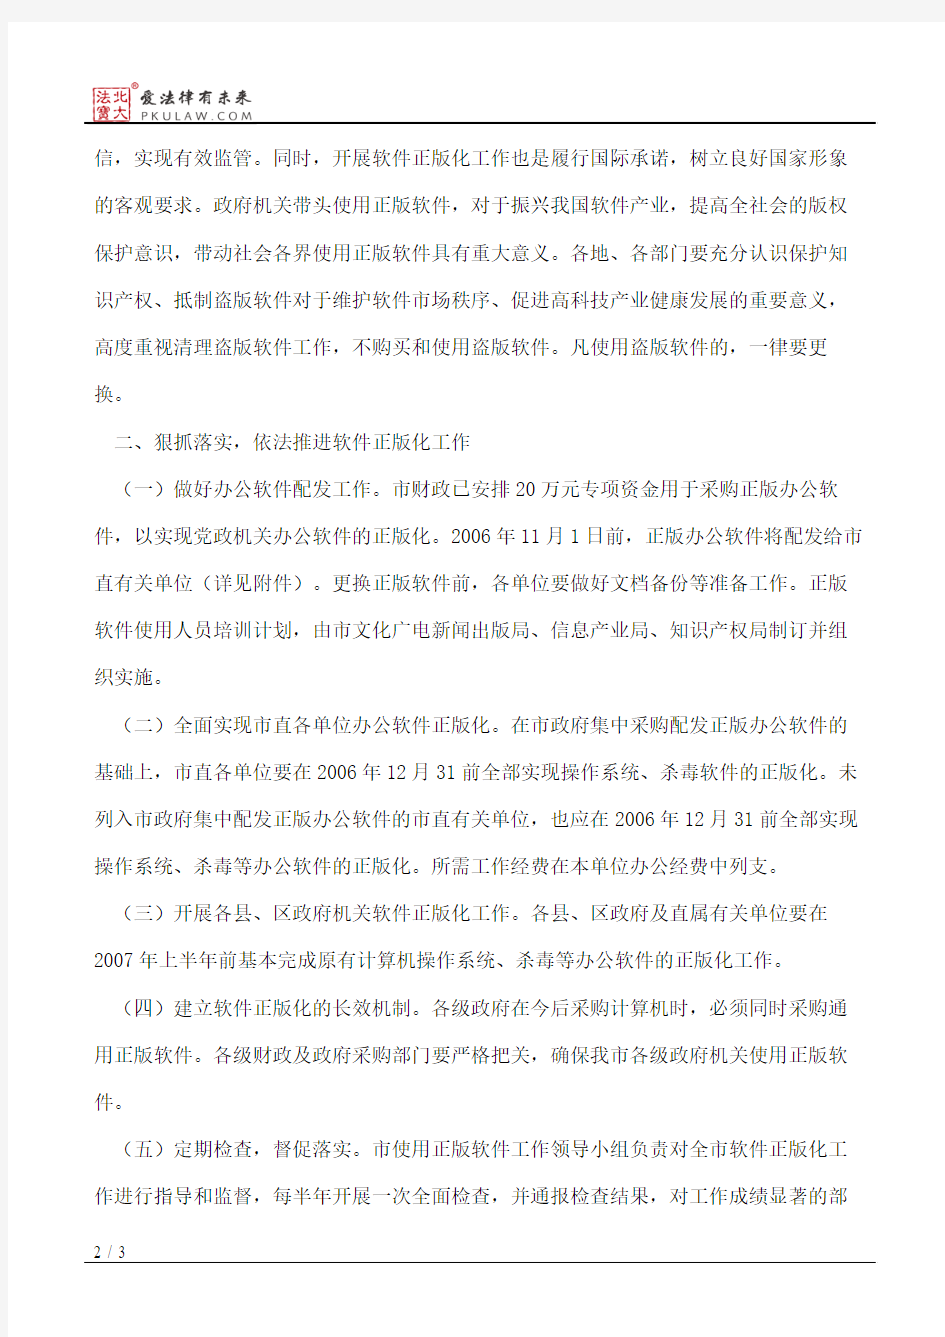 惠州市人民政府办公室关于进一步推进政府机关使用正版软件工作的通知